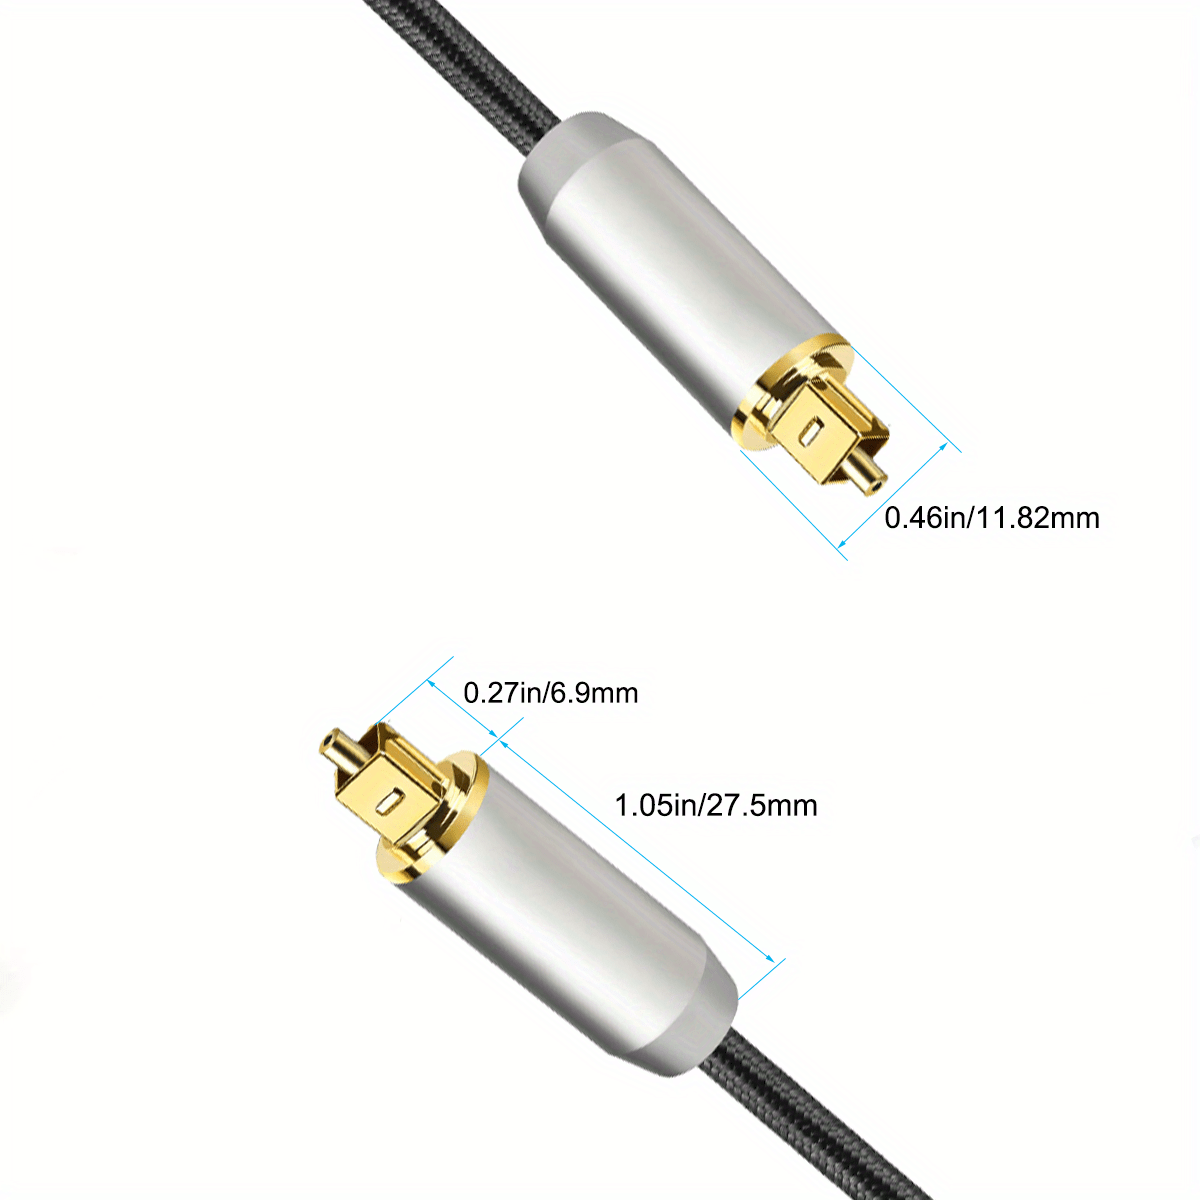 Câble audio optique numérique Toslink de qualité supérieure pour home  cinéma, barre de son, TV et plus encore (taille : 10 m) [67]